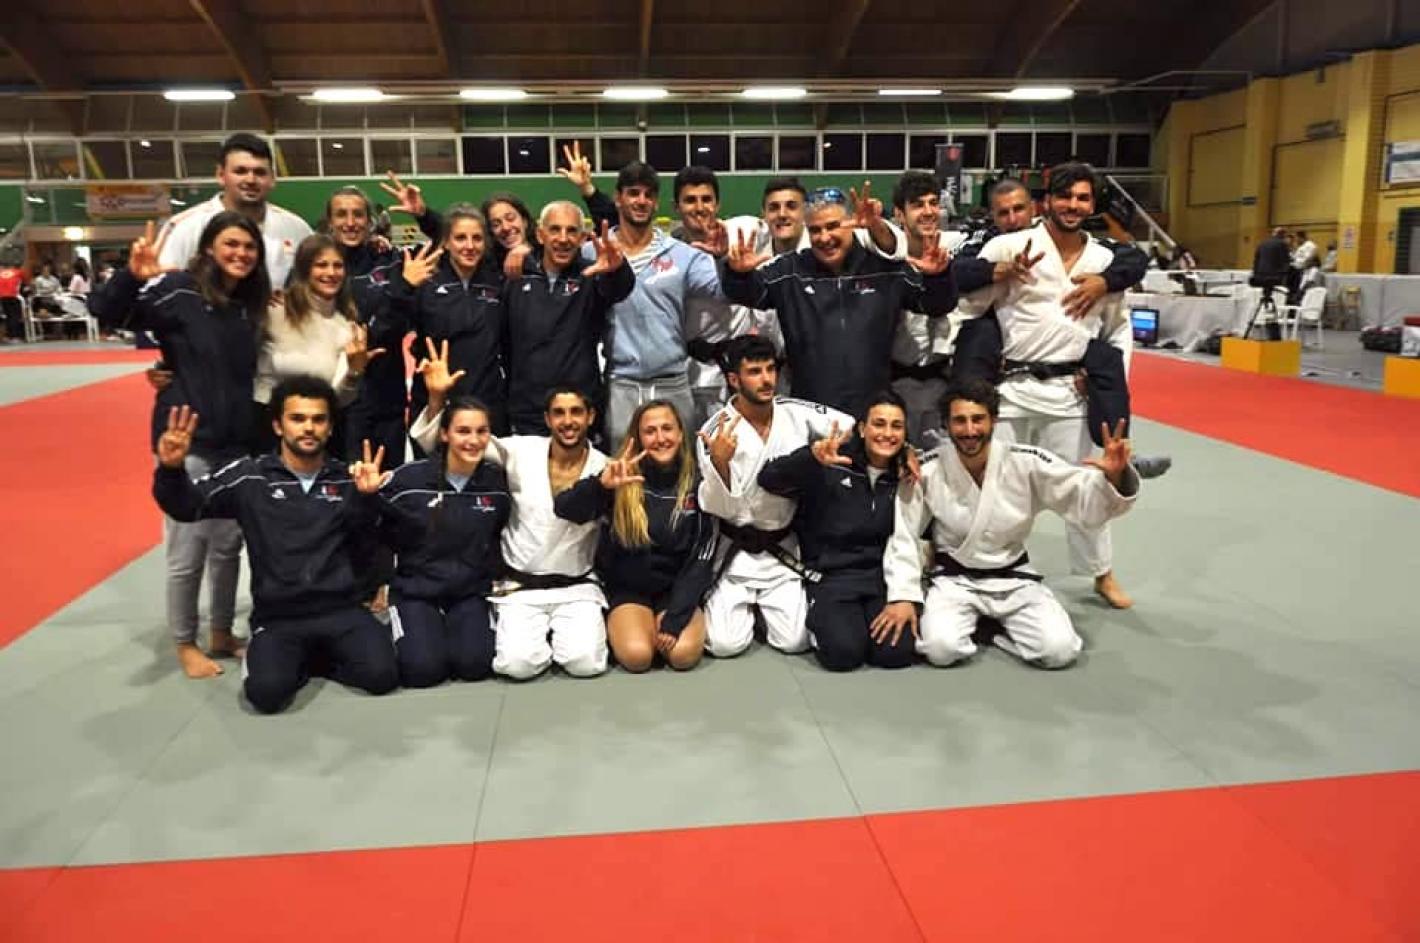 images/liguria/judo/medium/recco_a1_2019.jpg